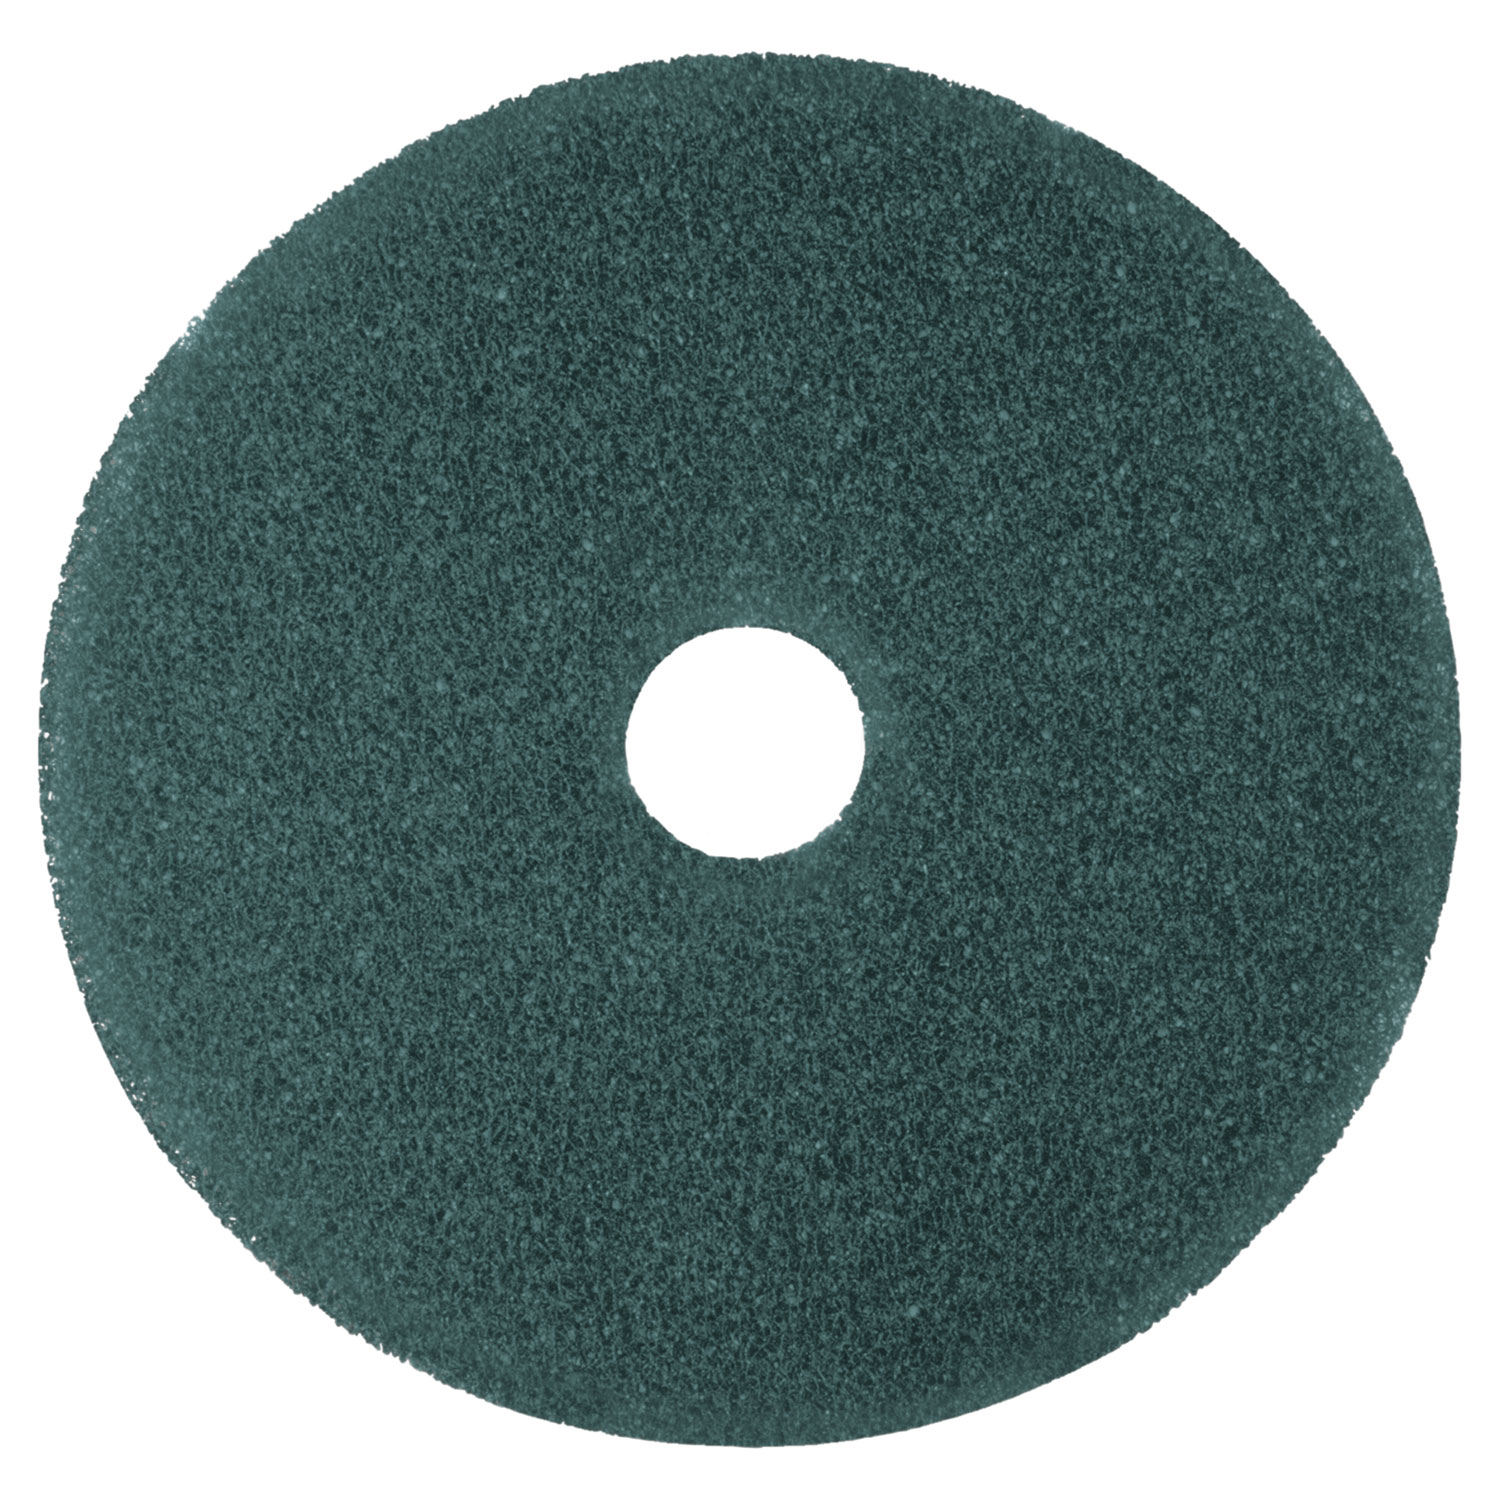 Cleaner Floor Pad 5300, 17 Diameter, Blue, 5/Carton